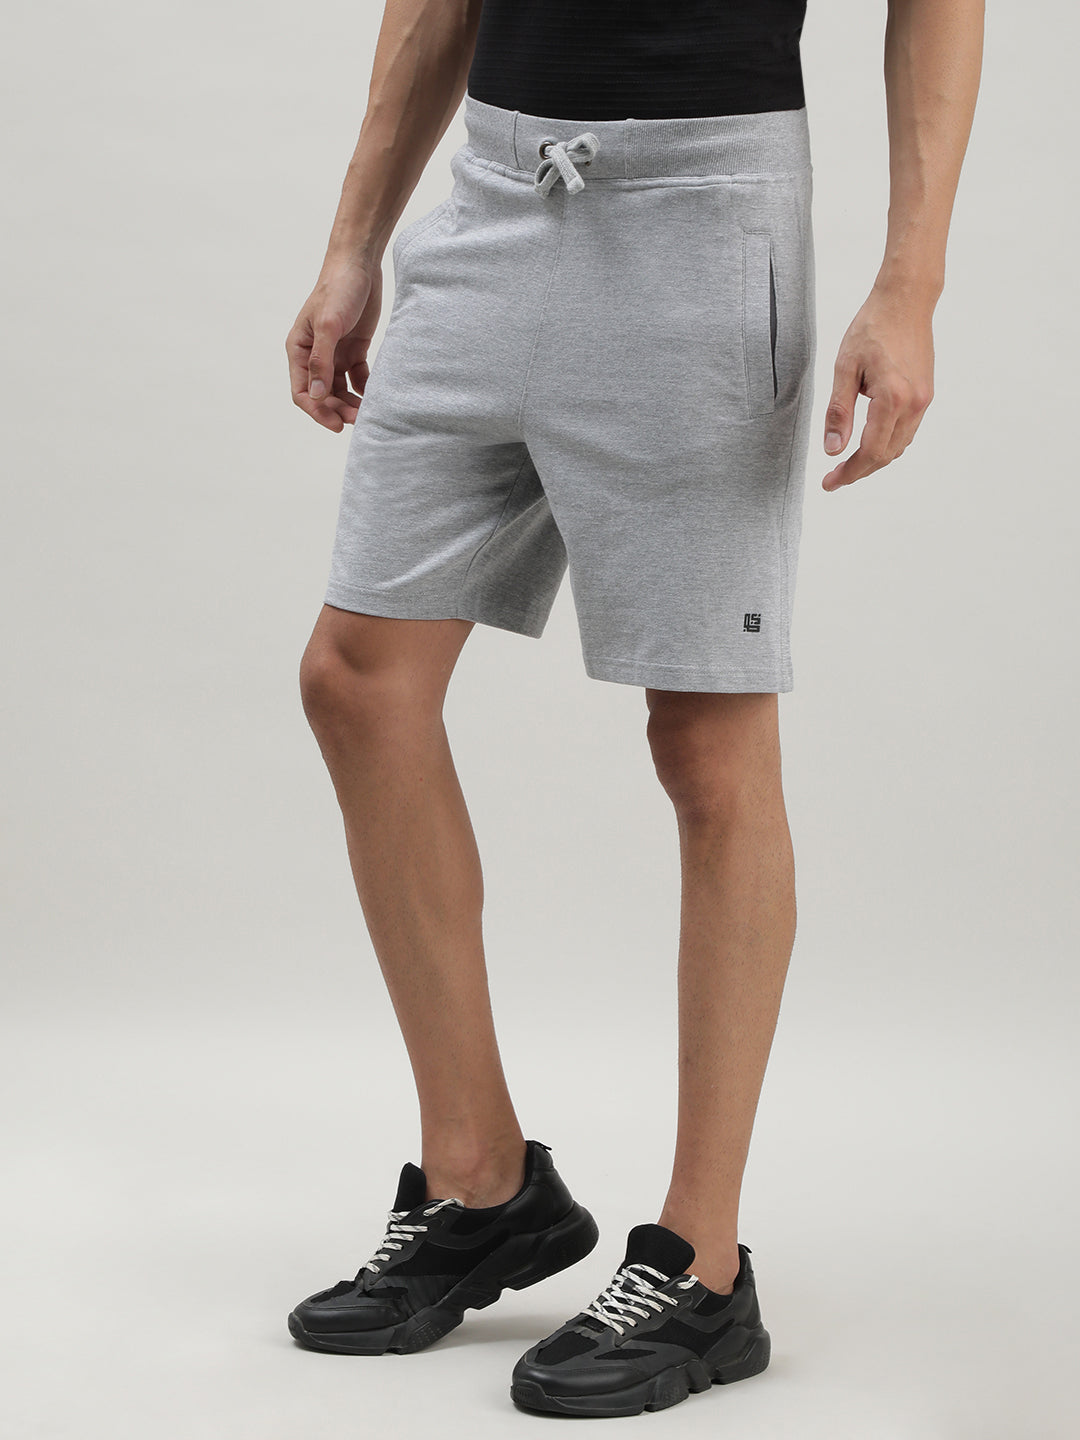 Light Grey Shorts for Men